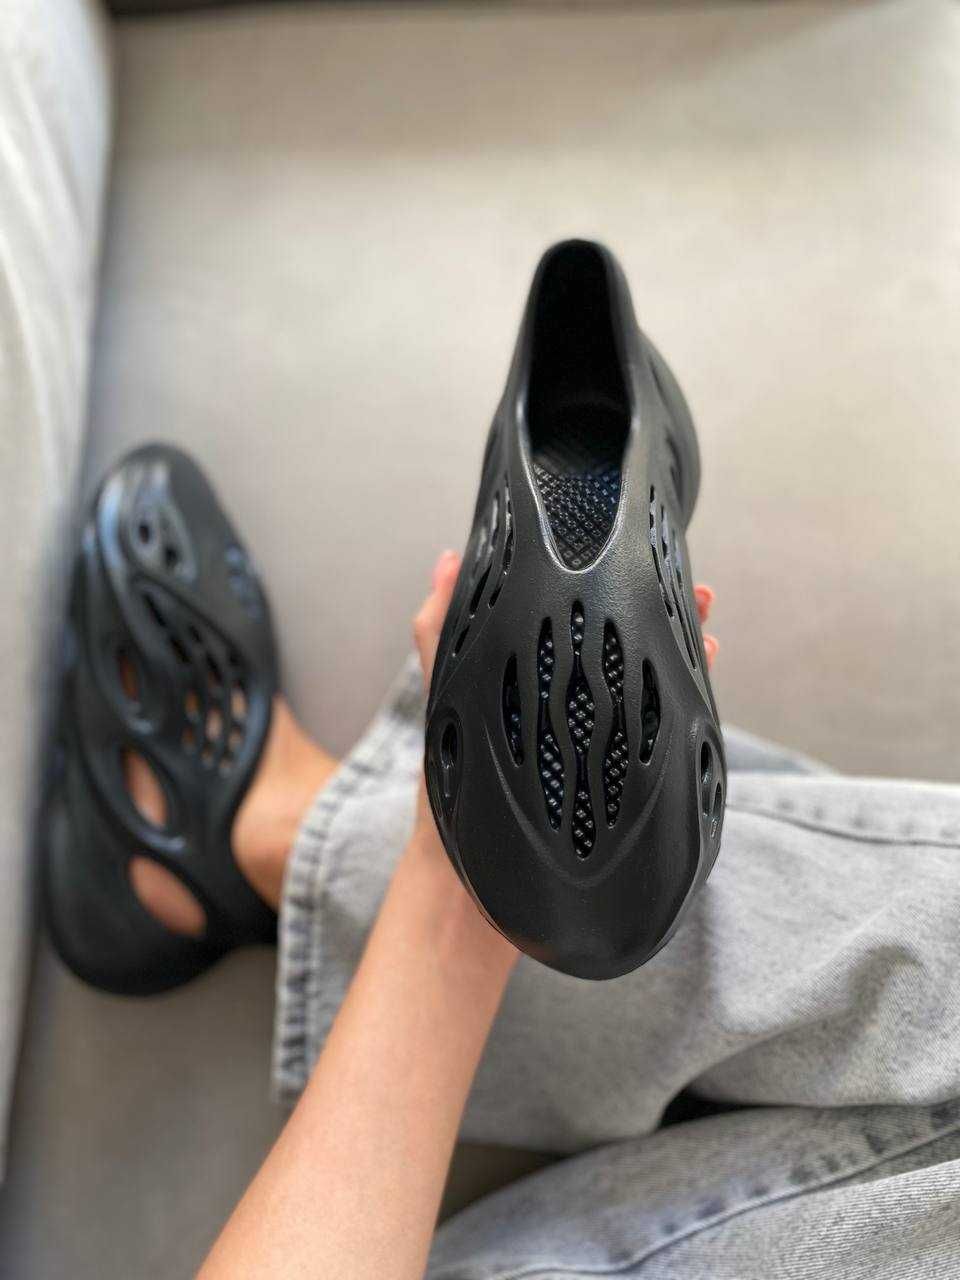 Жіночі кросівки adidas YEEZY Foam Runner чорний 9024 НОВИЗНА